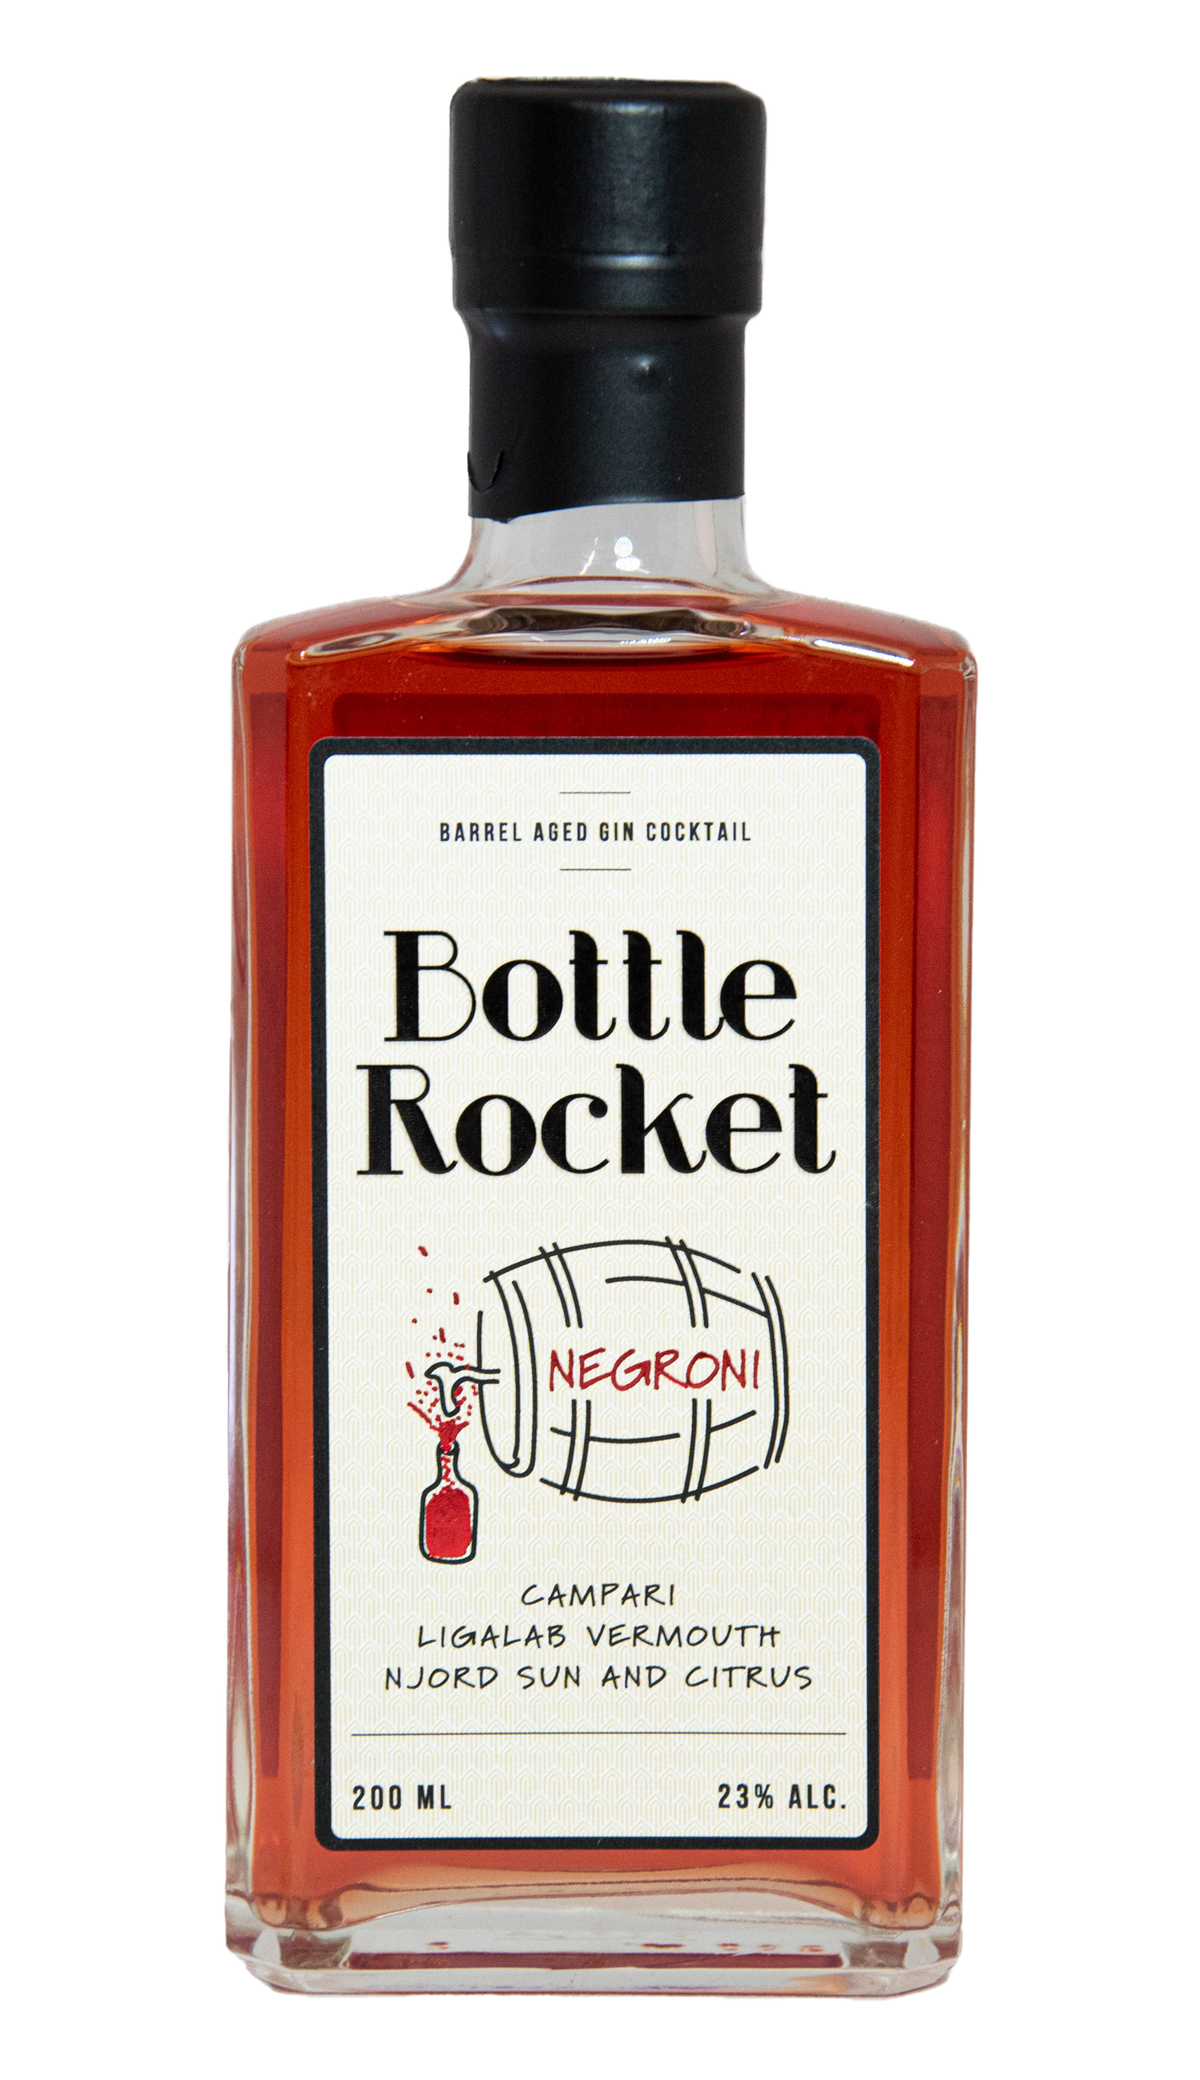 Bottle Rocket Negroni